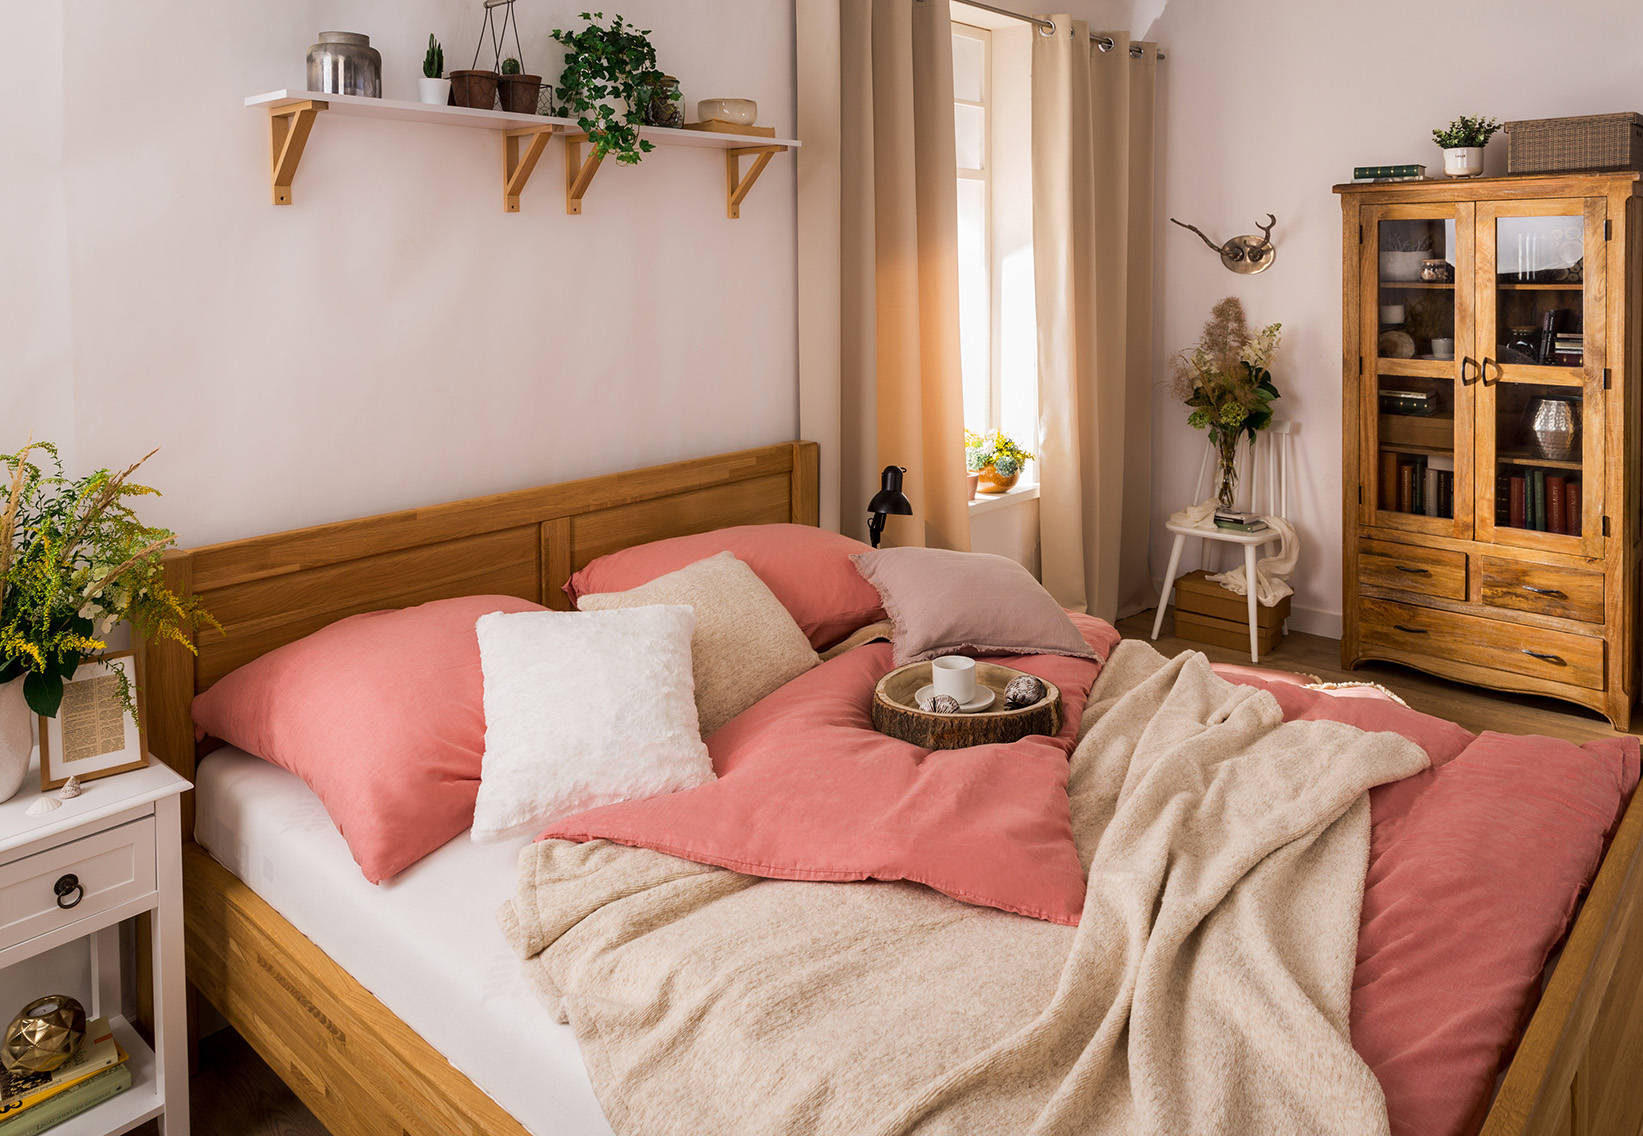 Sypialnia w jasnych kolorach, klasyczna